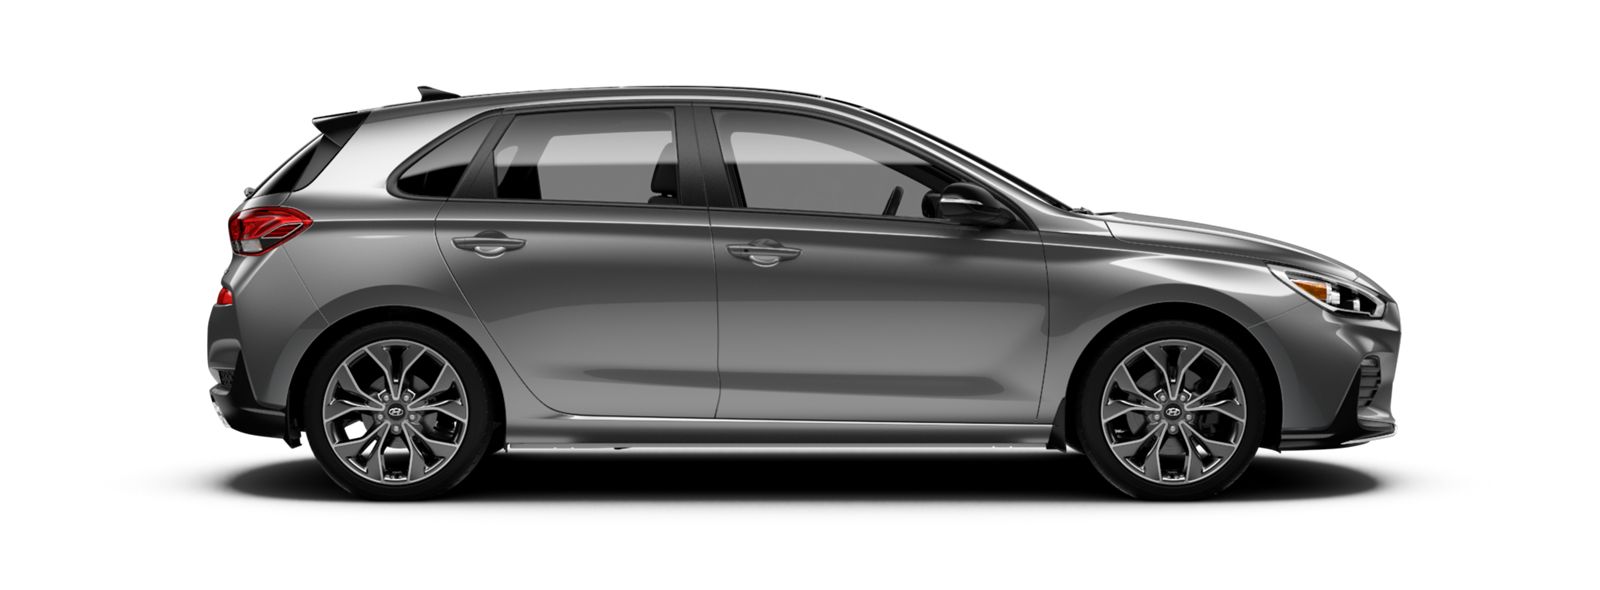 Hyundaiusa.com 2020 Elantra GT